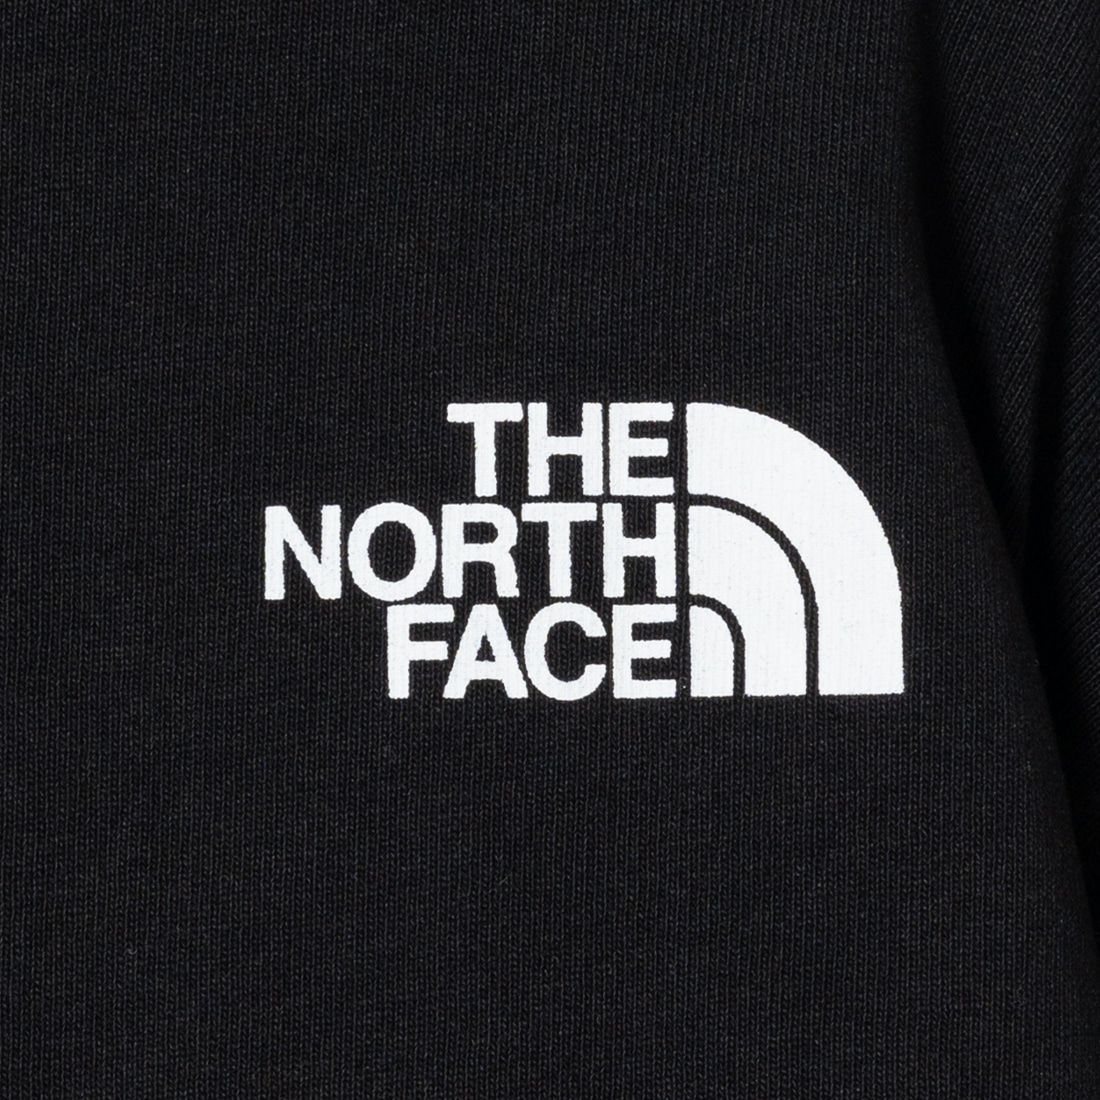 THE NORTH FACE [ザ ノースフェイス] ロングスリーブズーピッカーティー [NT32440] K